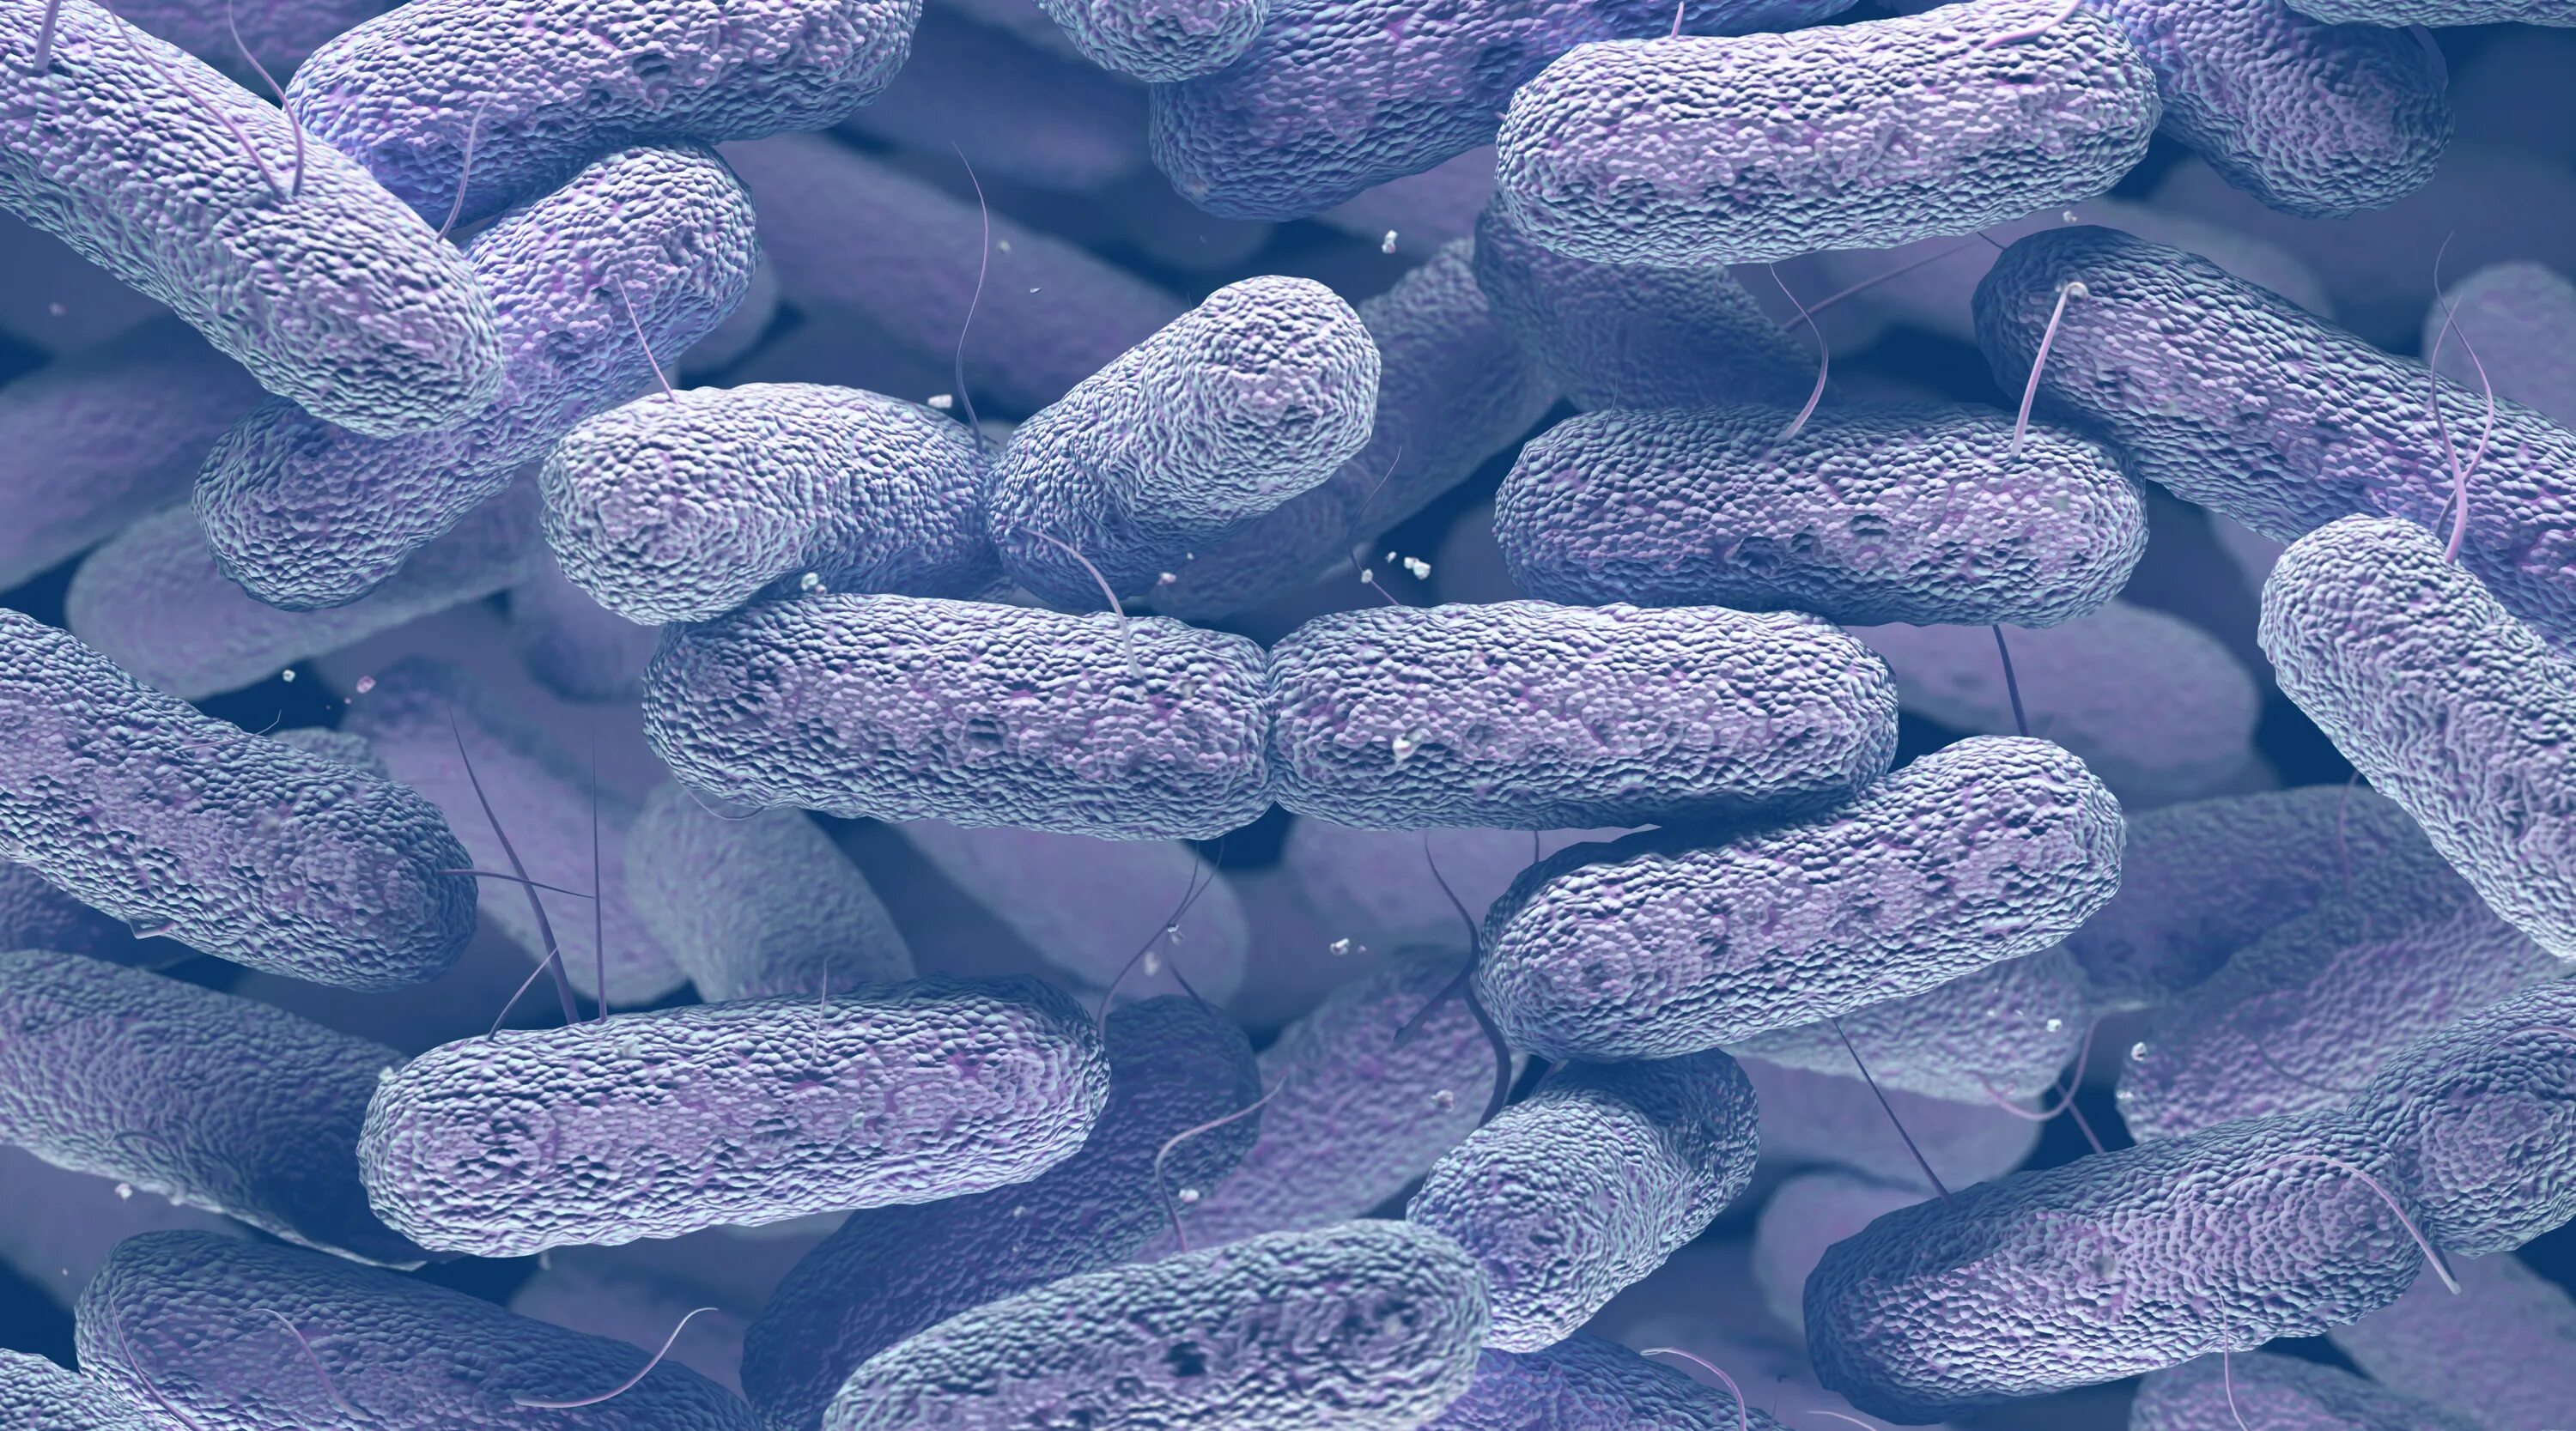 Бактерия клебсиелла. Бактерии семейства Enterobacteriaceae. Klebsiella pneumoniae под микроскопом. Диплобацилла Фридлендера. Микробиологические на аэробные микроорганизмы